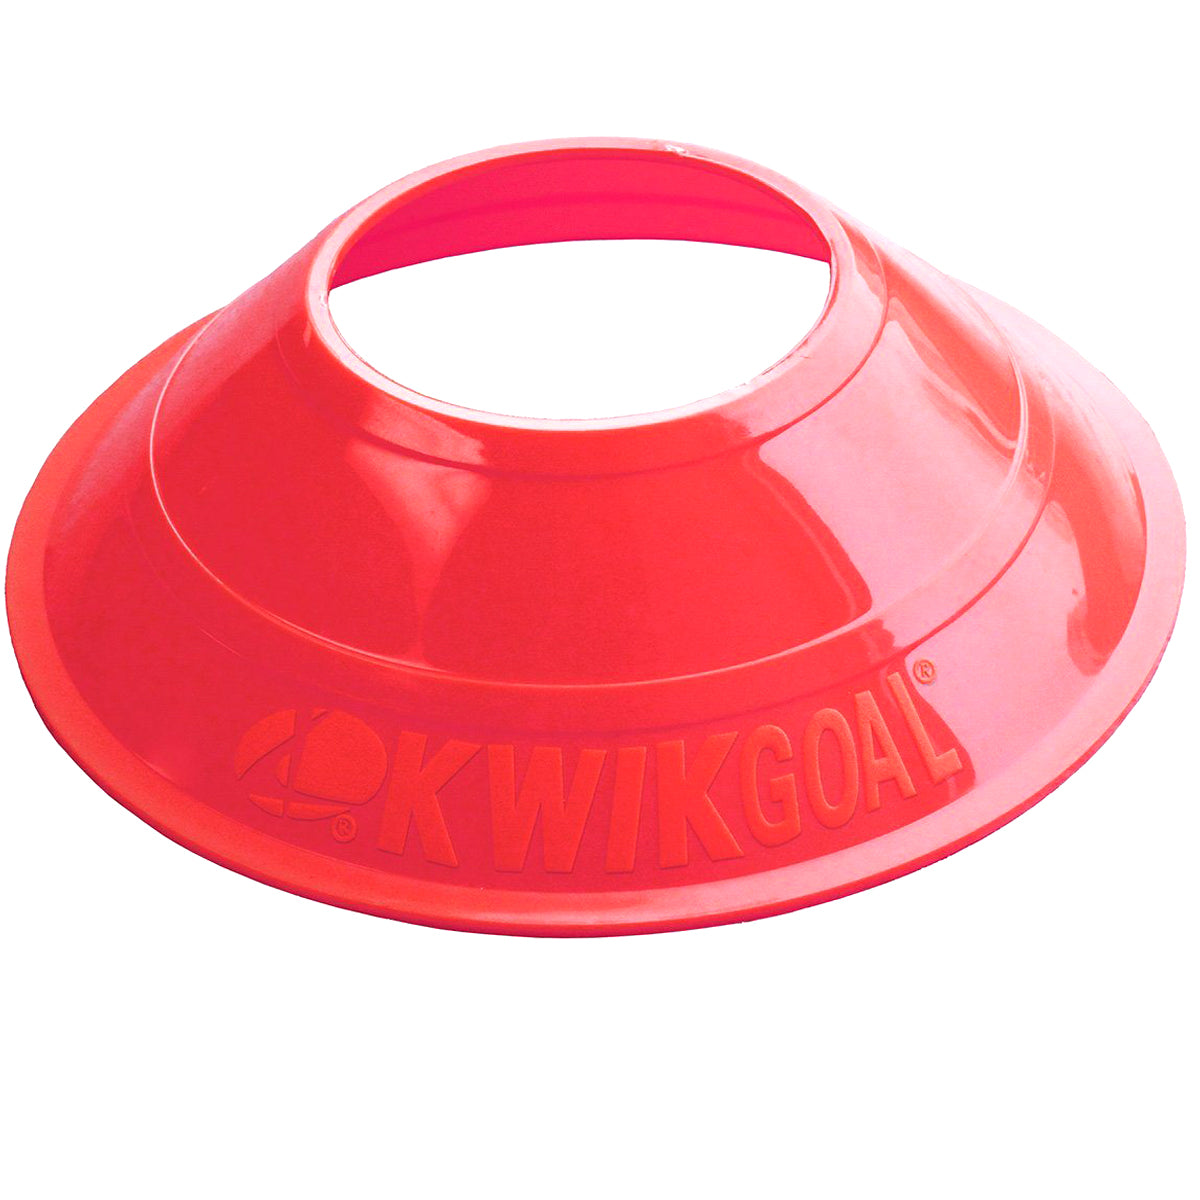 Kwikgoal Mini Disc Cones Soccer Coaching Equipment | 6A14 Field equipment Kwikgoal Red 